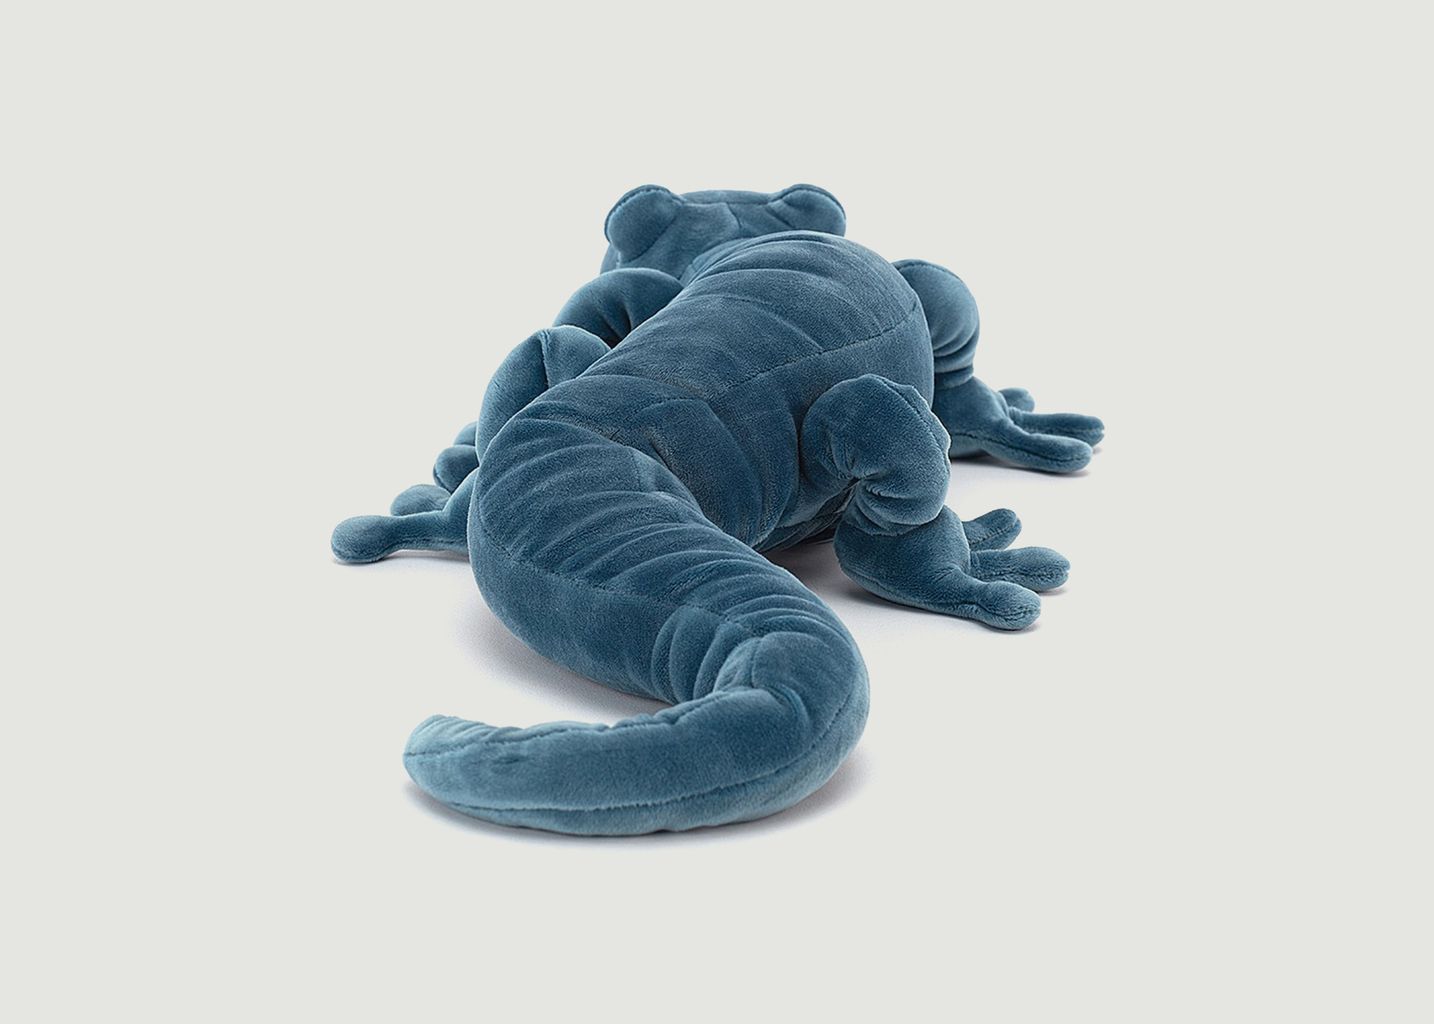 Zigzag Gecko Plush - Jellycat